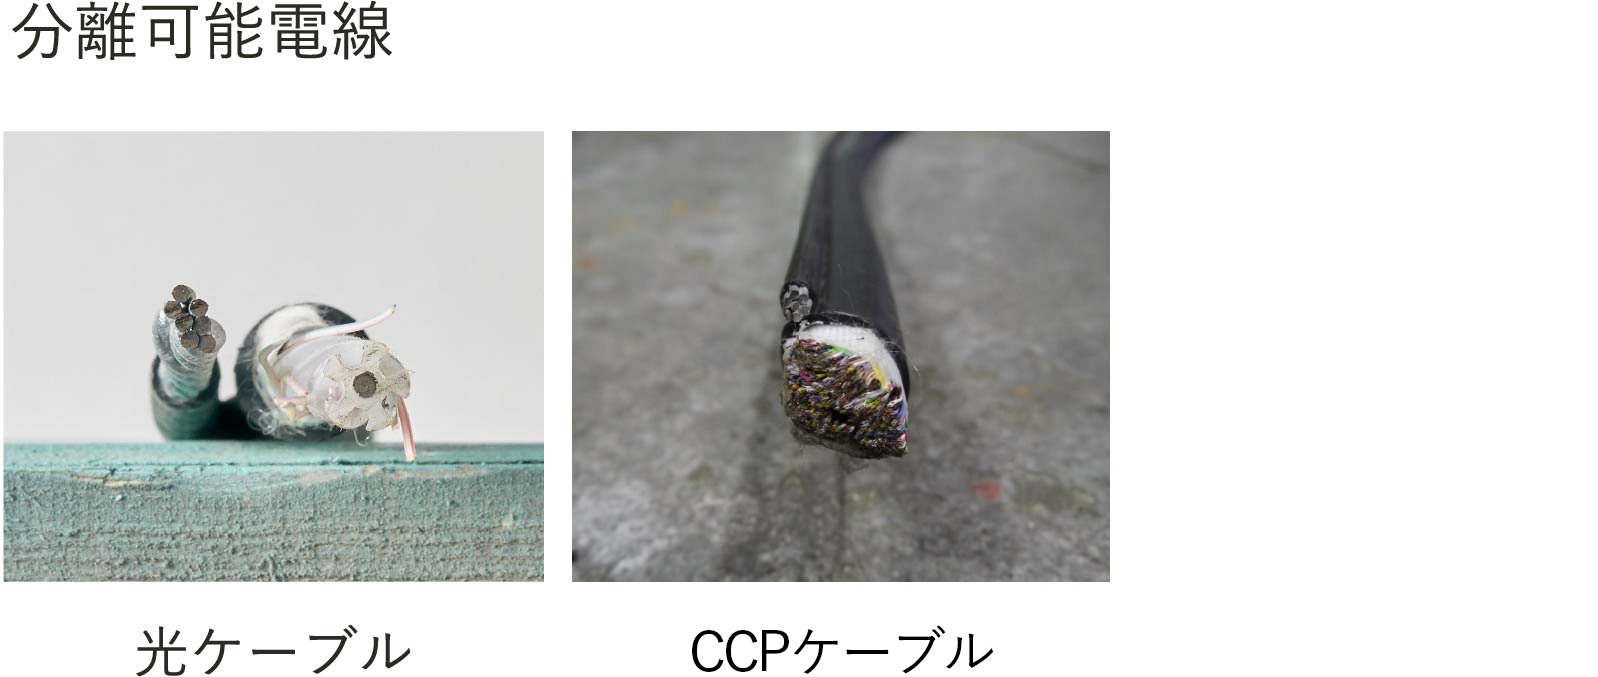 CCP型 剥線機